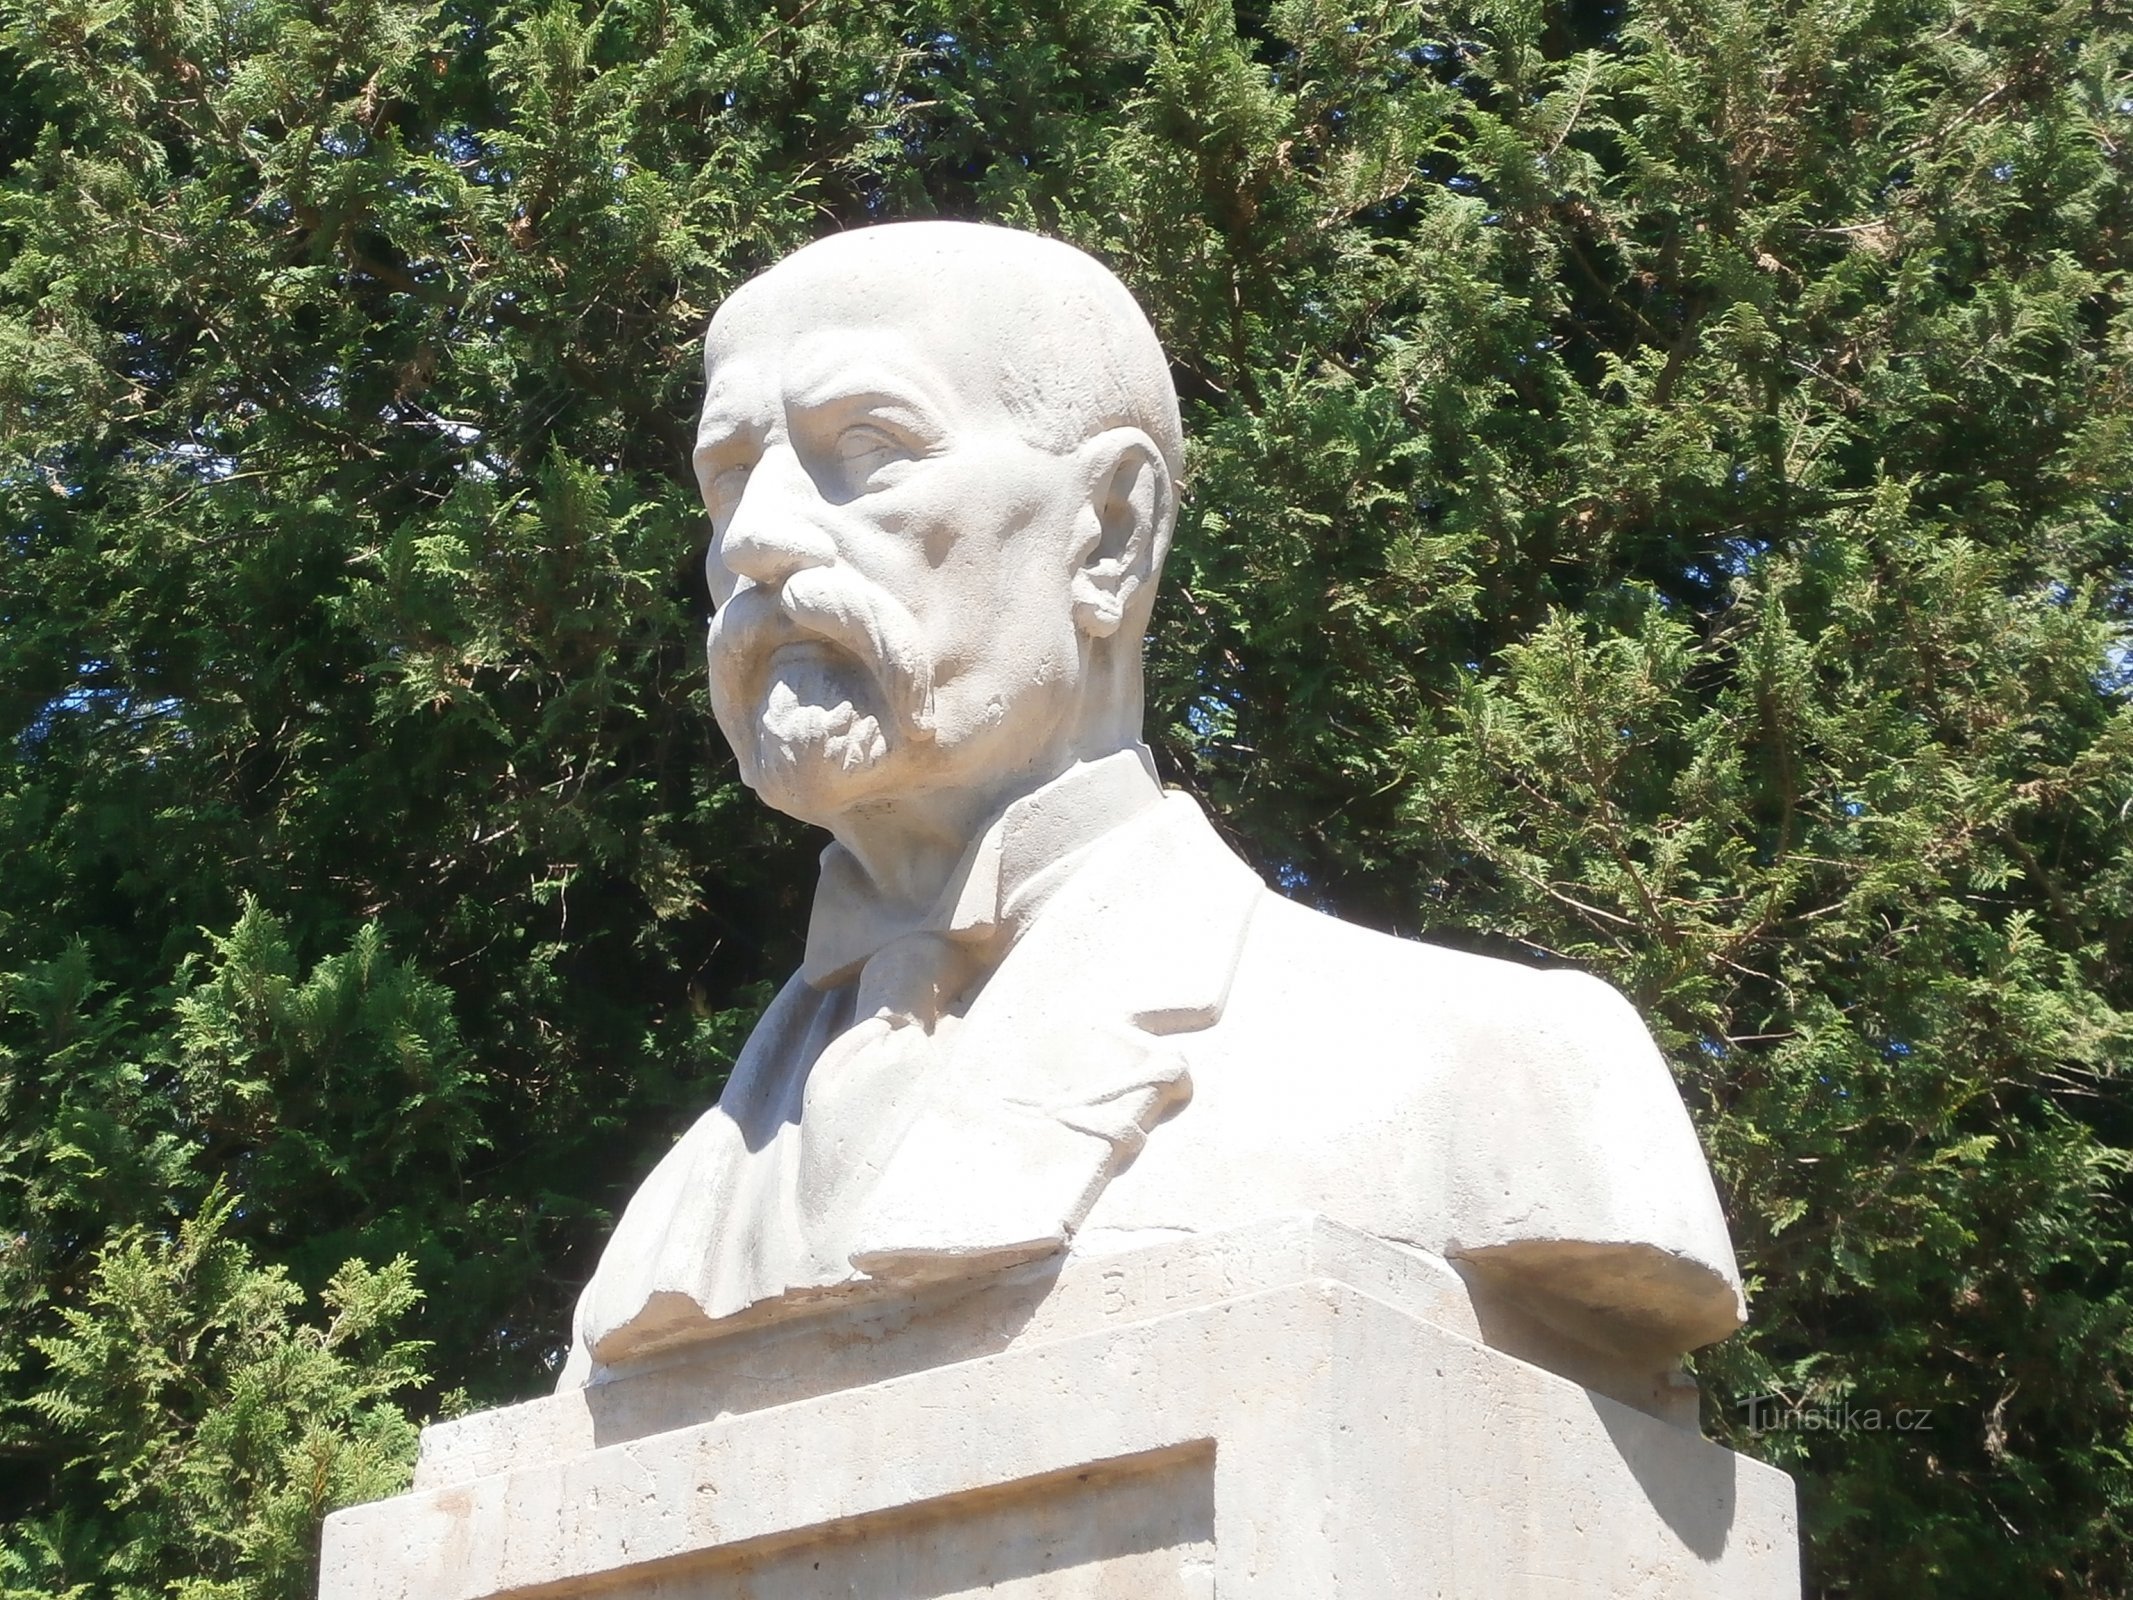 Busto di TG Masaryk sul monumento ai caduti della prima guerra mondiale (Havlovice)